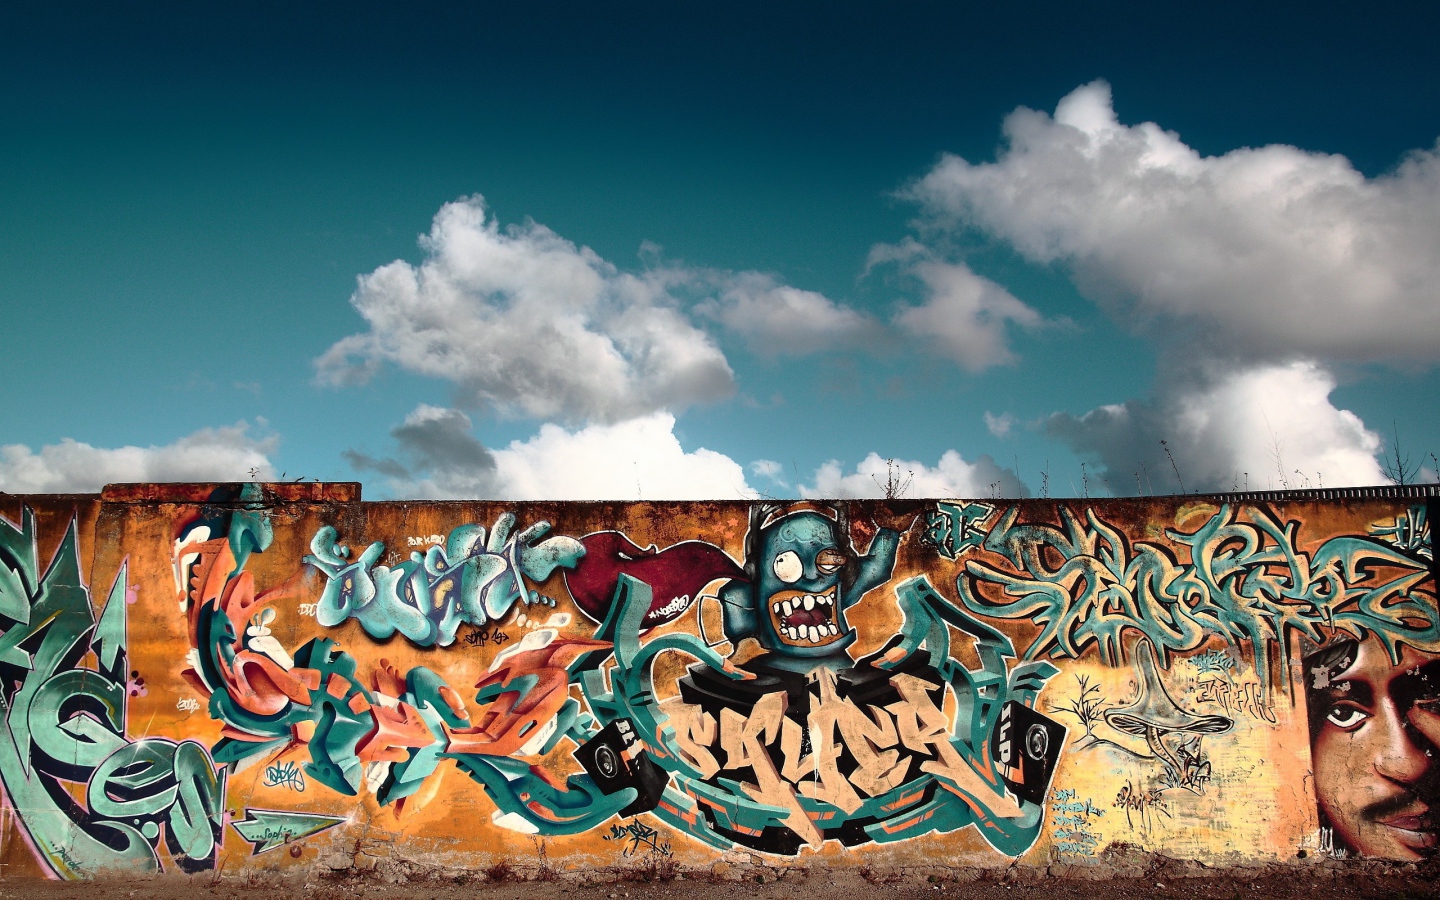 Яркое граффити на фоне неба